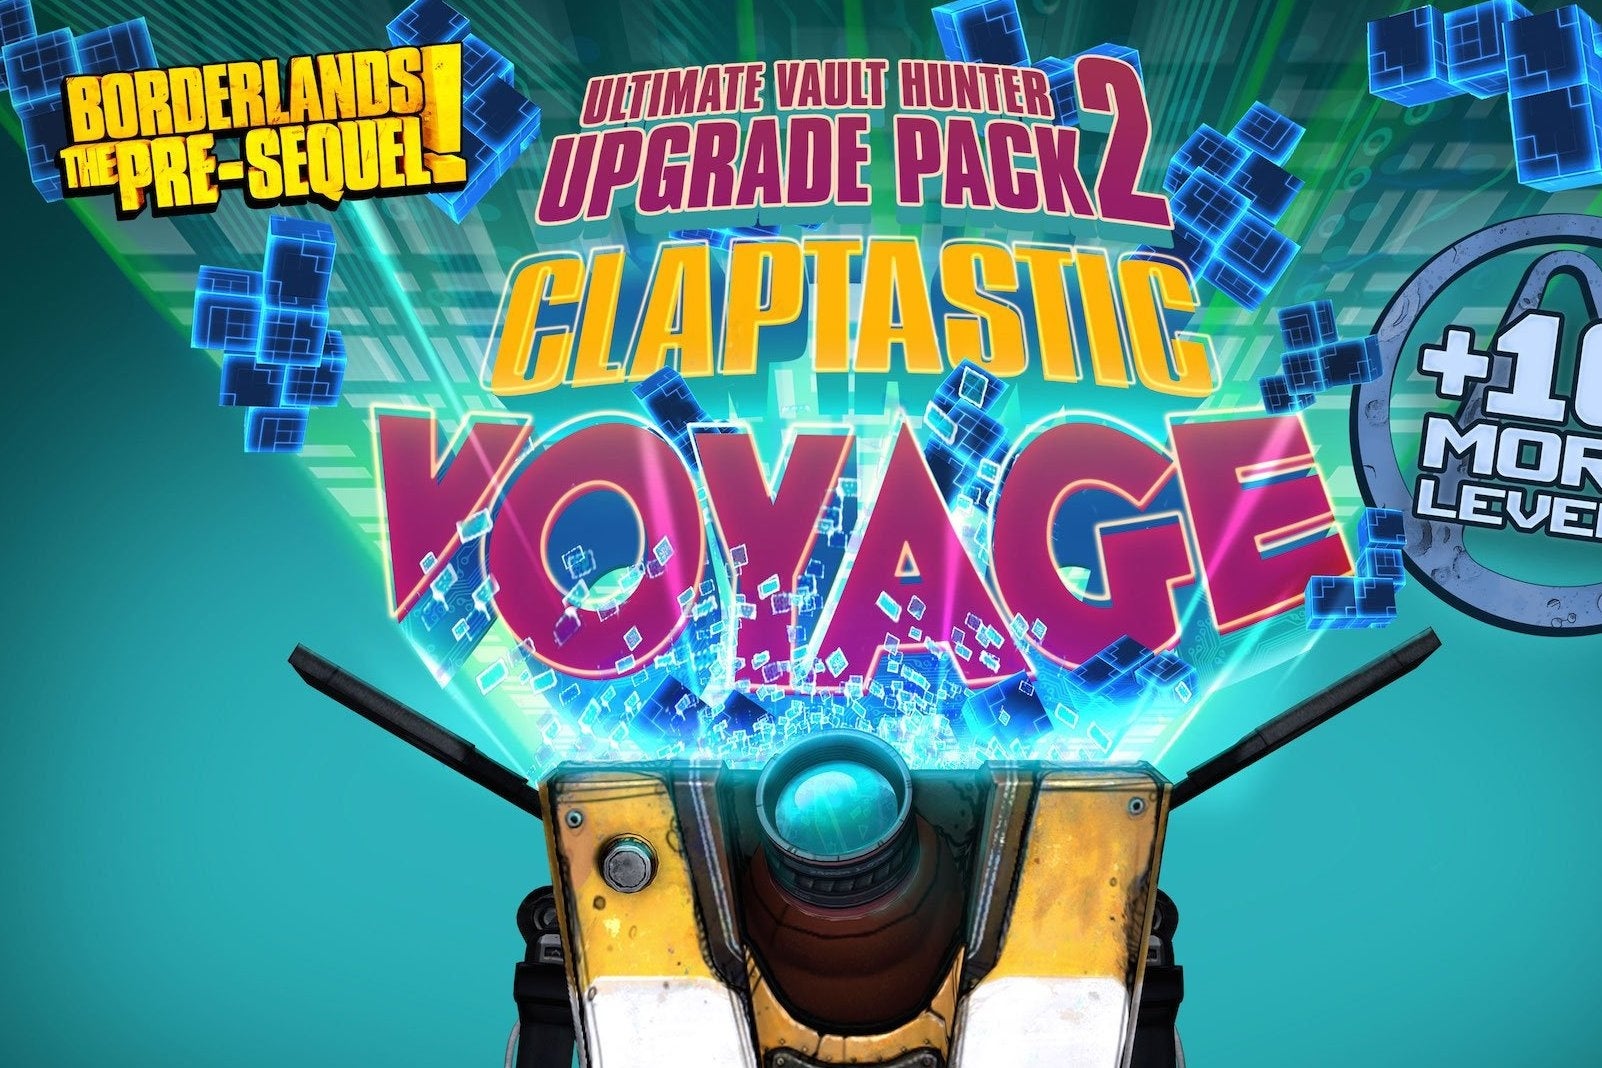 Image for Borderlands: The Pre-Sequel Claptastic Voyage DLC announced